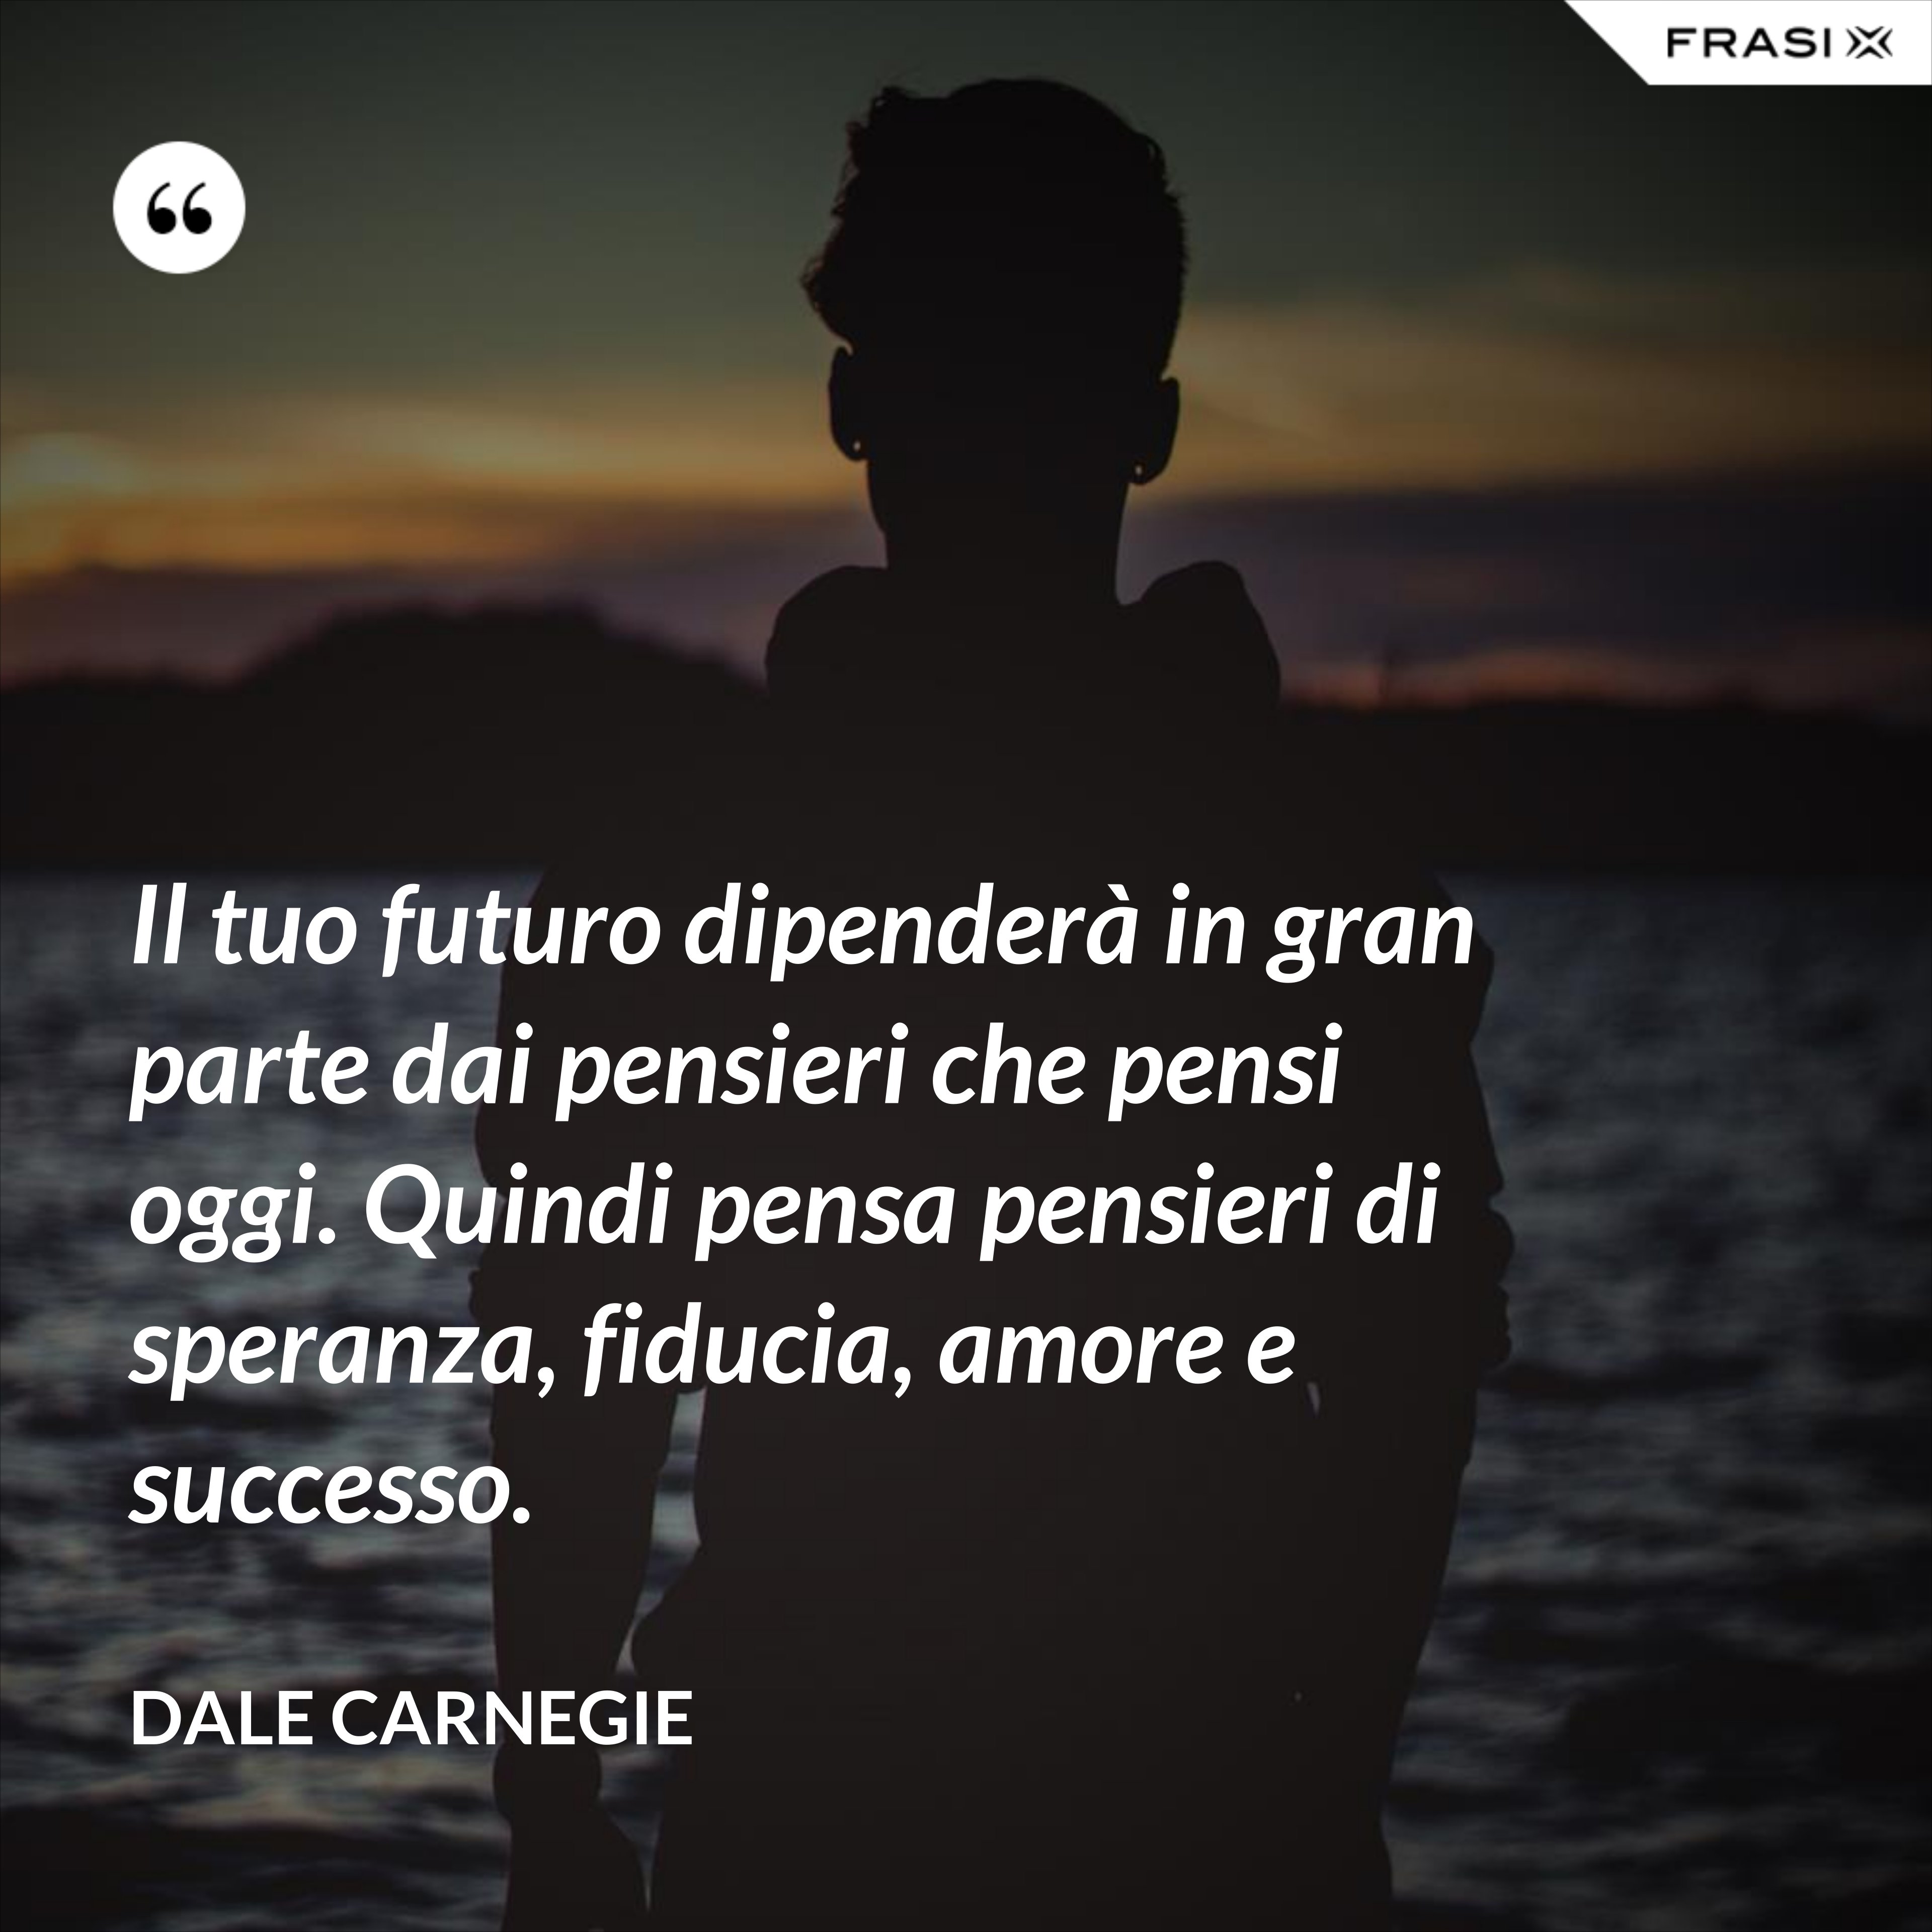 Il tuo futuro dipenderà in gran parte dai pensieri che pensi oggi. Quindi pensa pensieri di speranza, fiducia, amore e successo. - Dale Carnegie